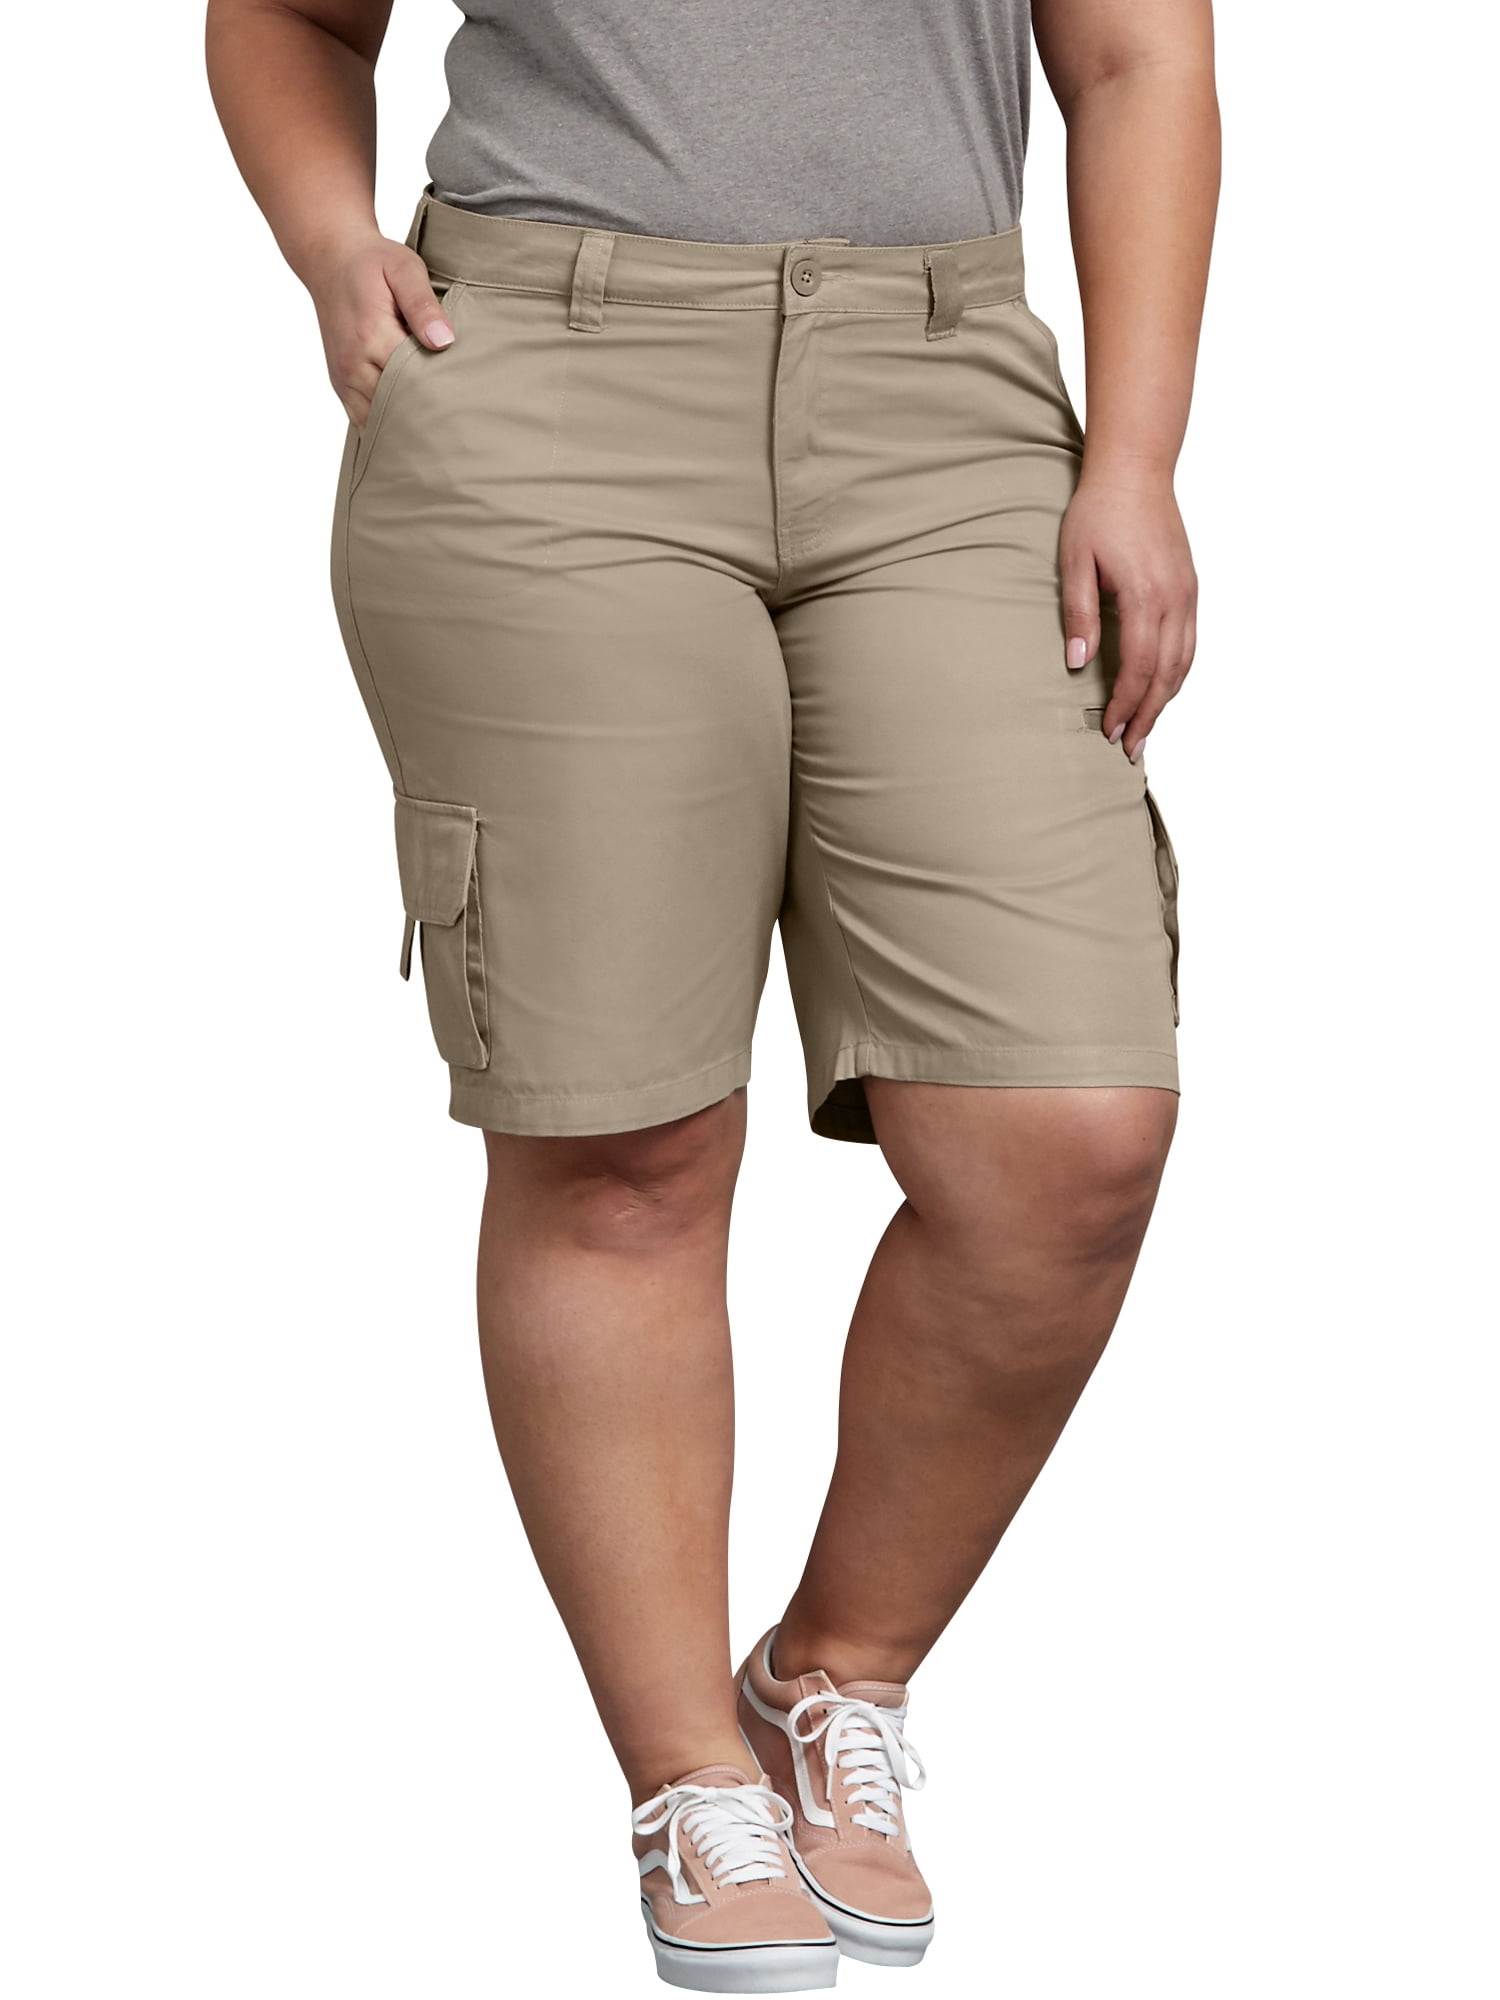 Women's Plus Size Cotton Cargo Short - Walmart.com